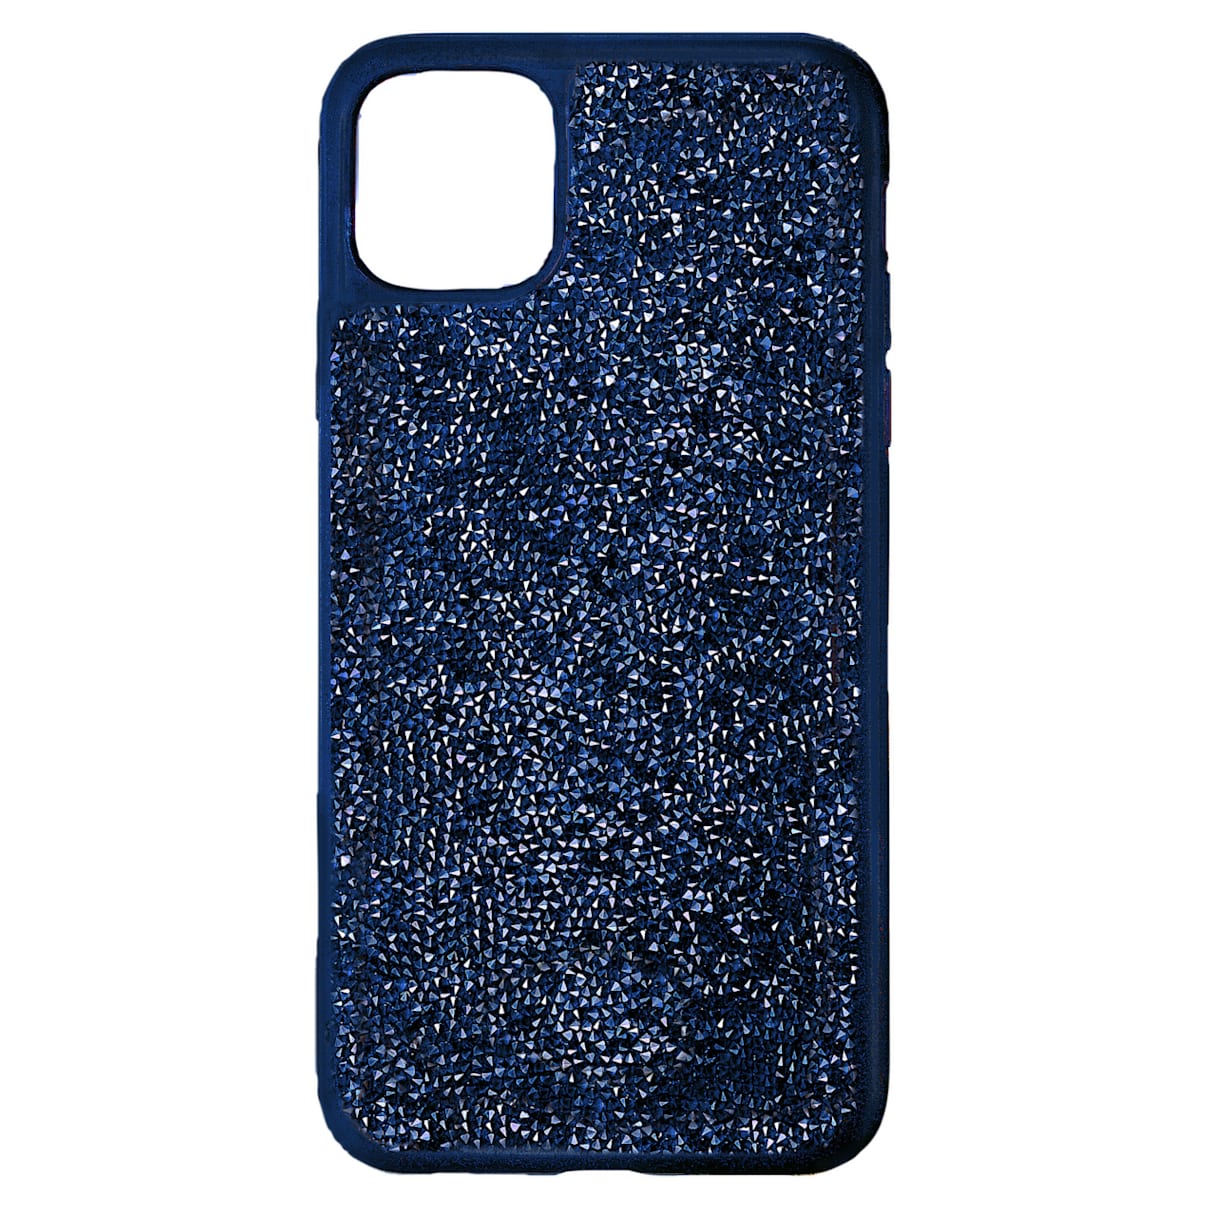 Custodia per smartphone con bordi protettivi Glam Rock, iPhone® 12 mini, blu